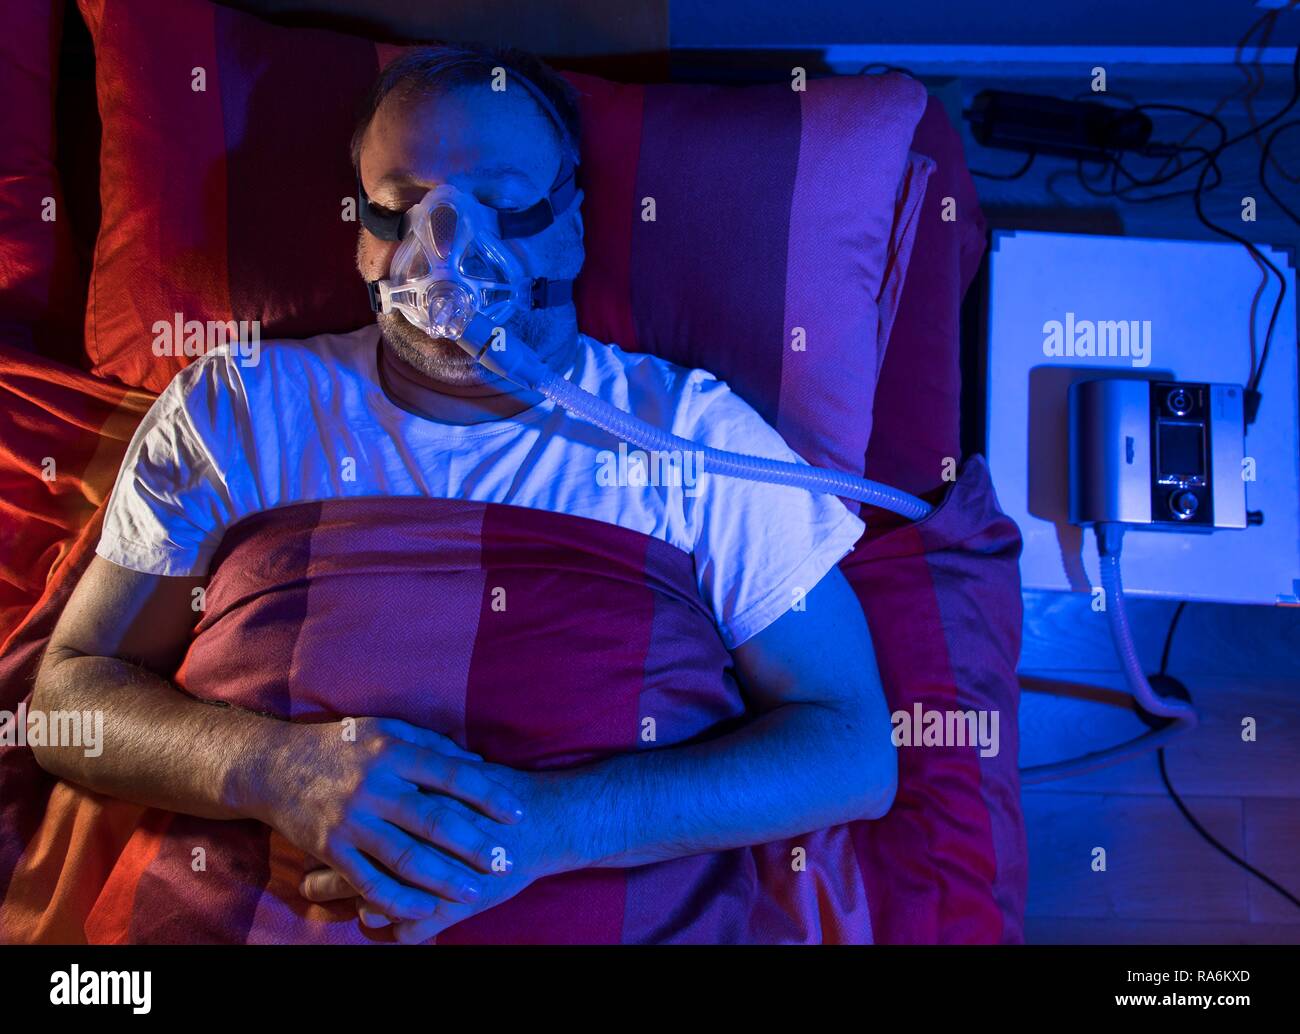 L'homme avec l'apnée du sommeil, porte un masque CPAP pendant le sommeil, masque respiratoire, qui pousse l'air dans les voies respiratoires en raison Banque D'Images